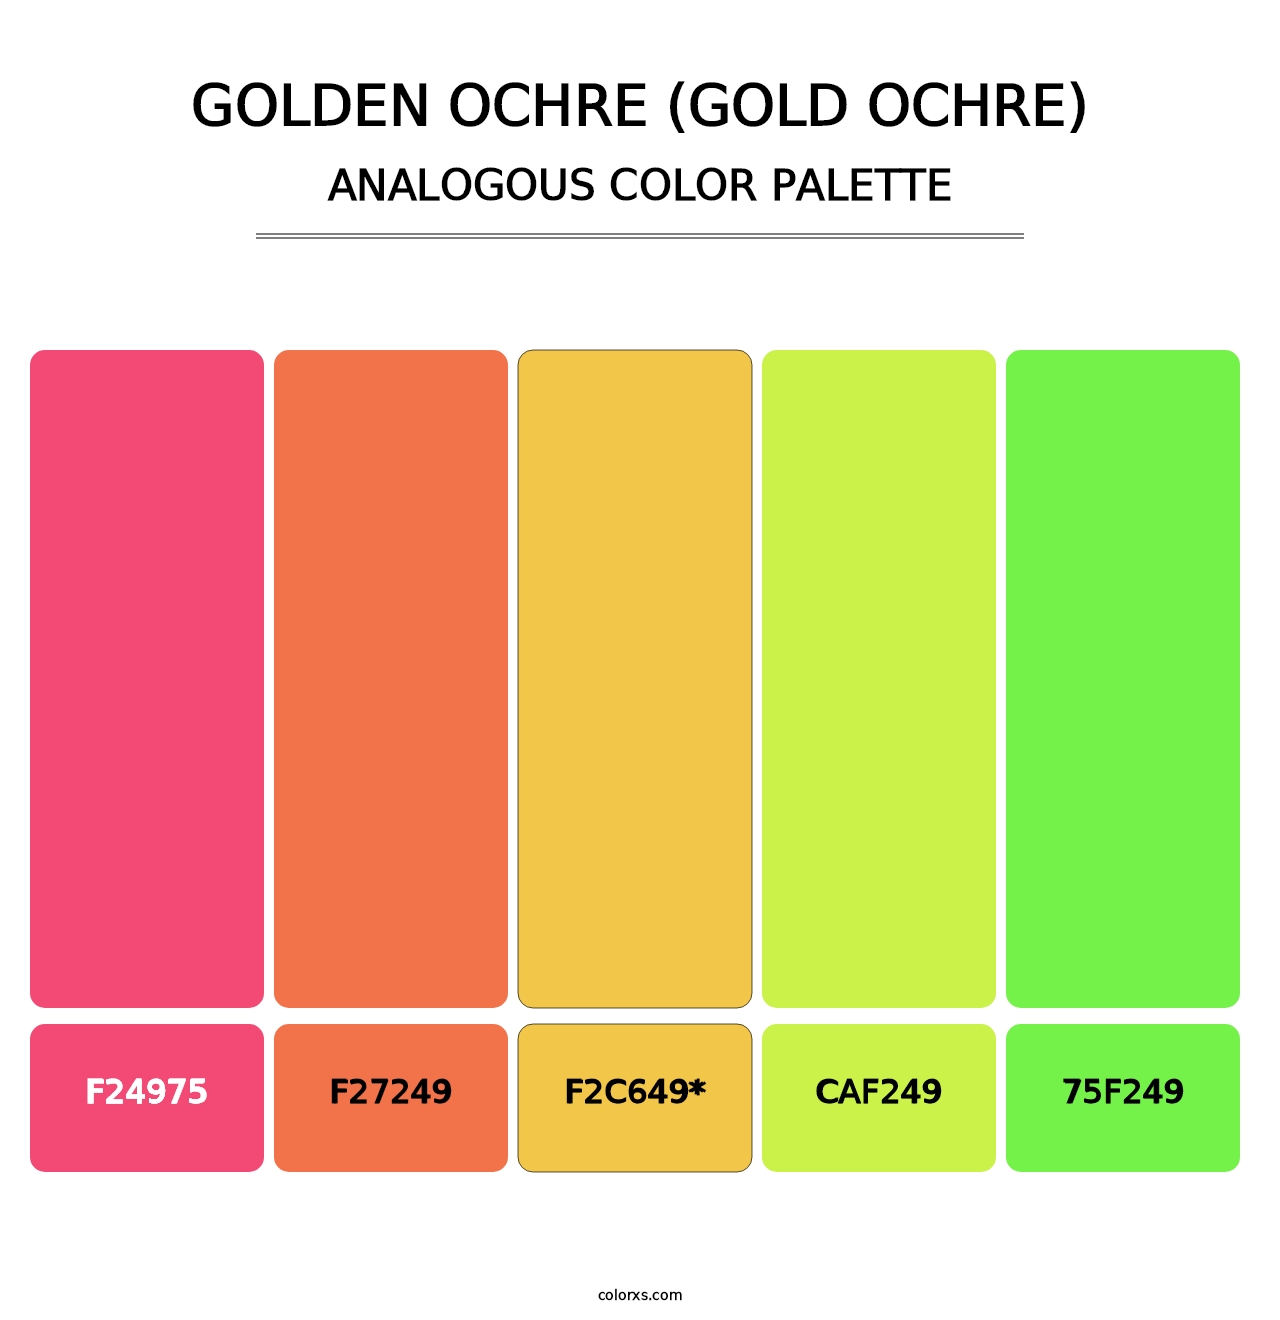 Golden Ochre (Gold Ochre) - Analogous Color Palette